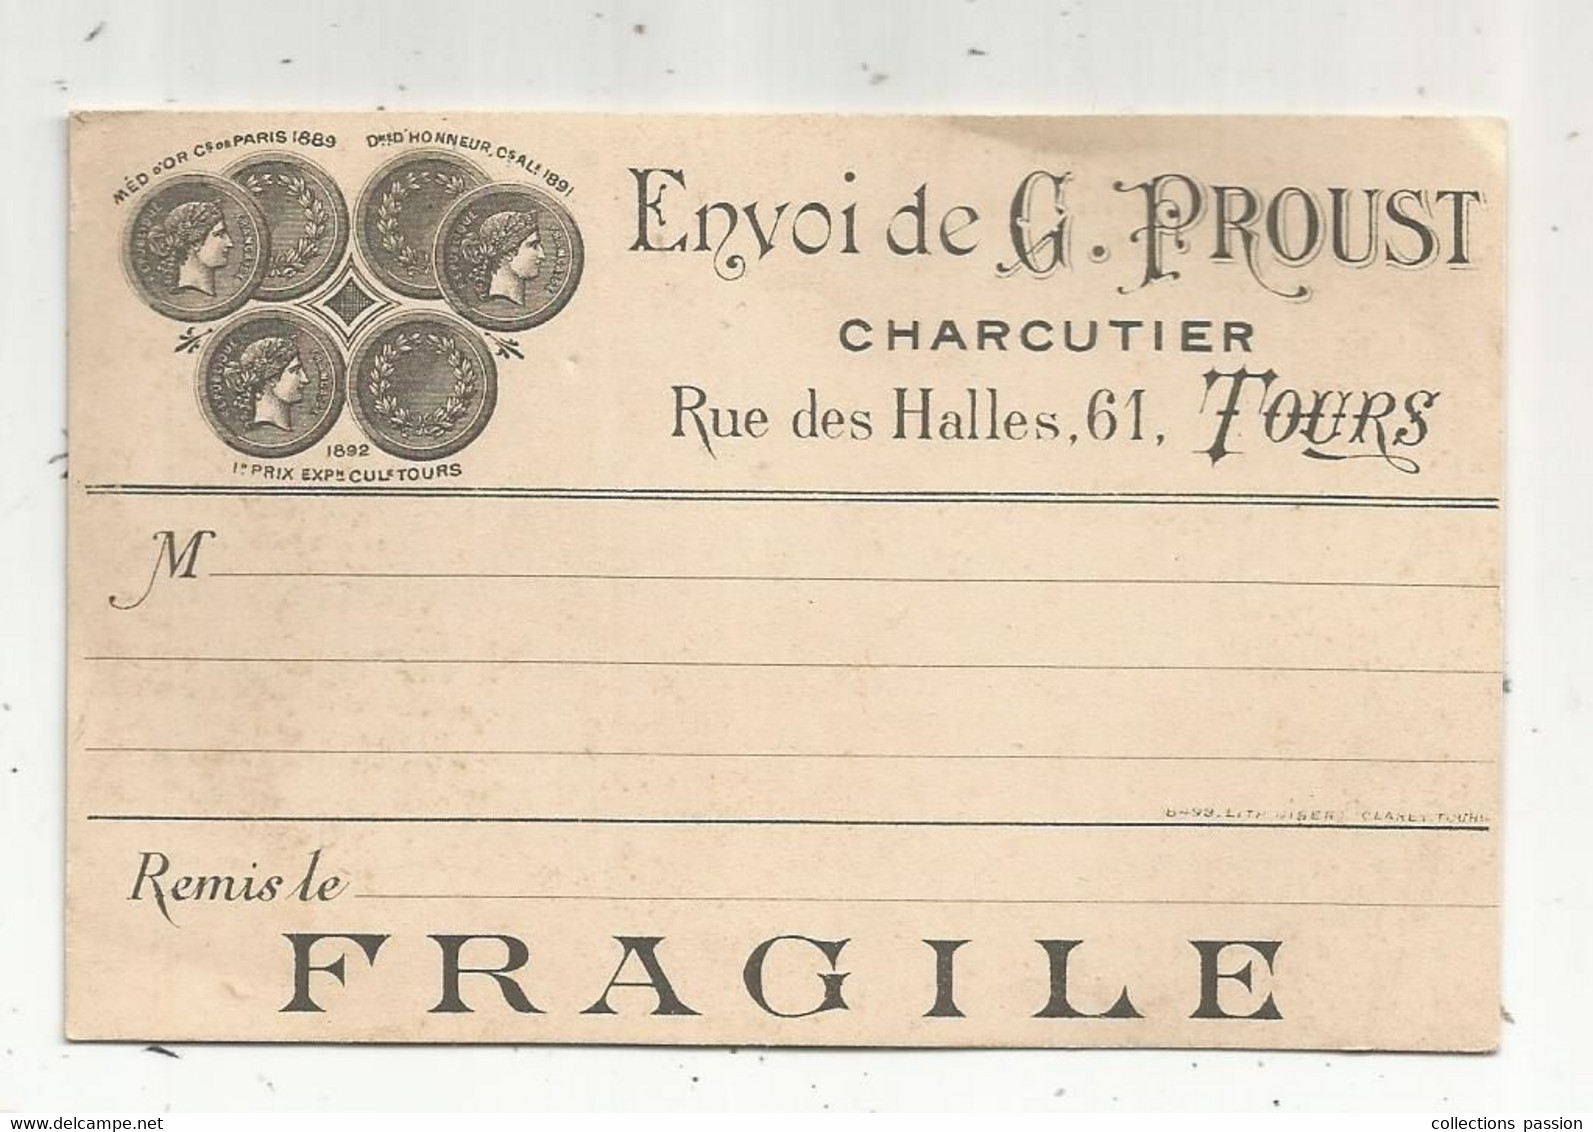 Carte De Visite , Justificatif De Remise ,envoi De G. Proust , Charcutier , 61 Rue Des Halles,37 ,TOURS - Cartes De Visite